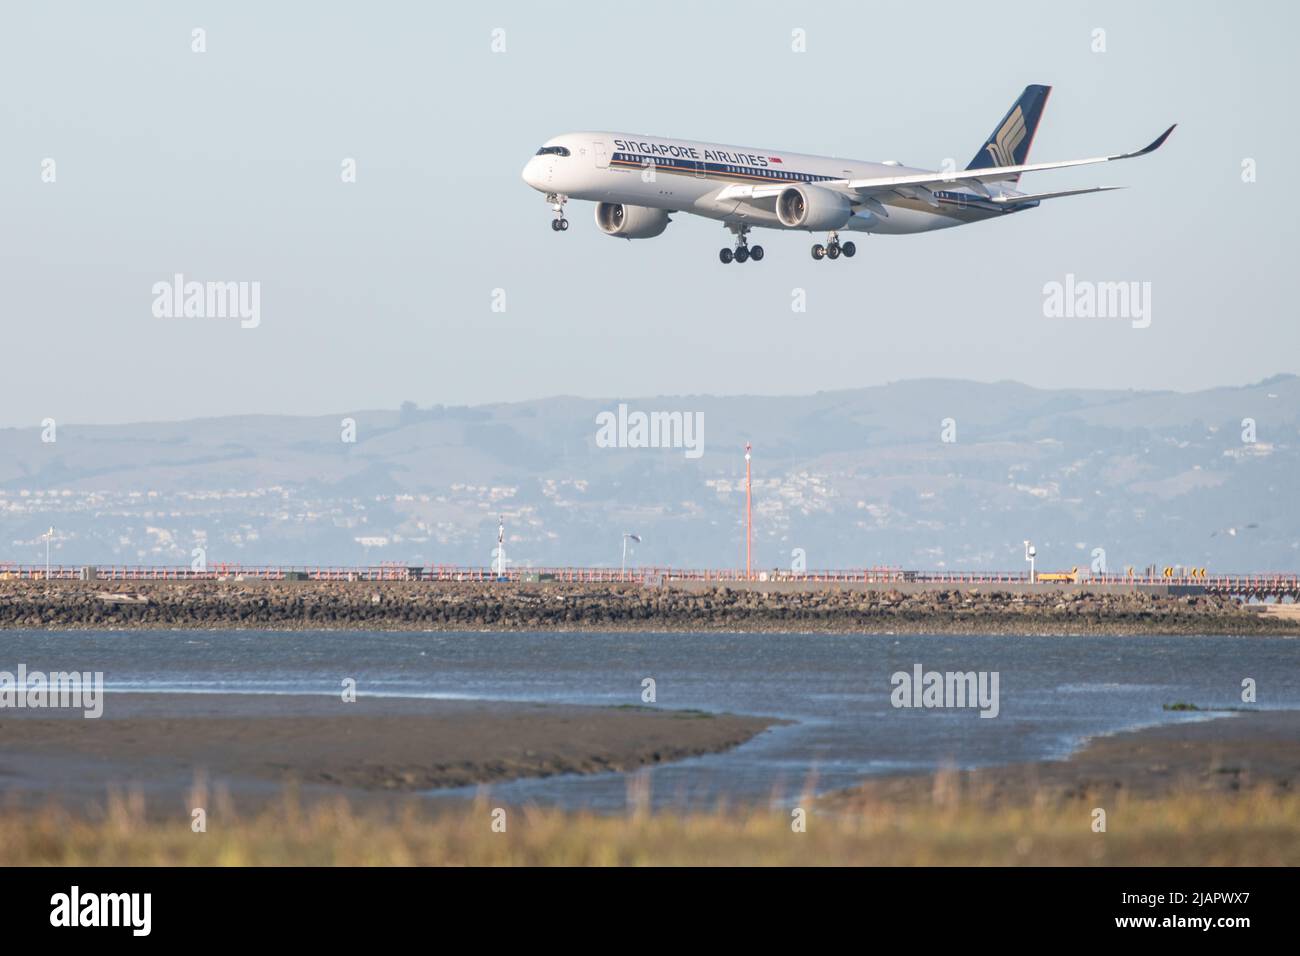 Un avion de la compagnie aérienne de singapour arrive pour un atterrissage à l'aéroport international de San Francisco, Californie, États-Unis. Banque D'Images